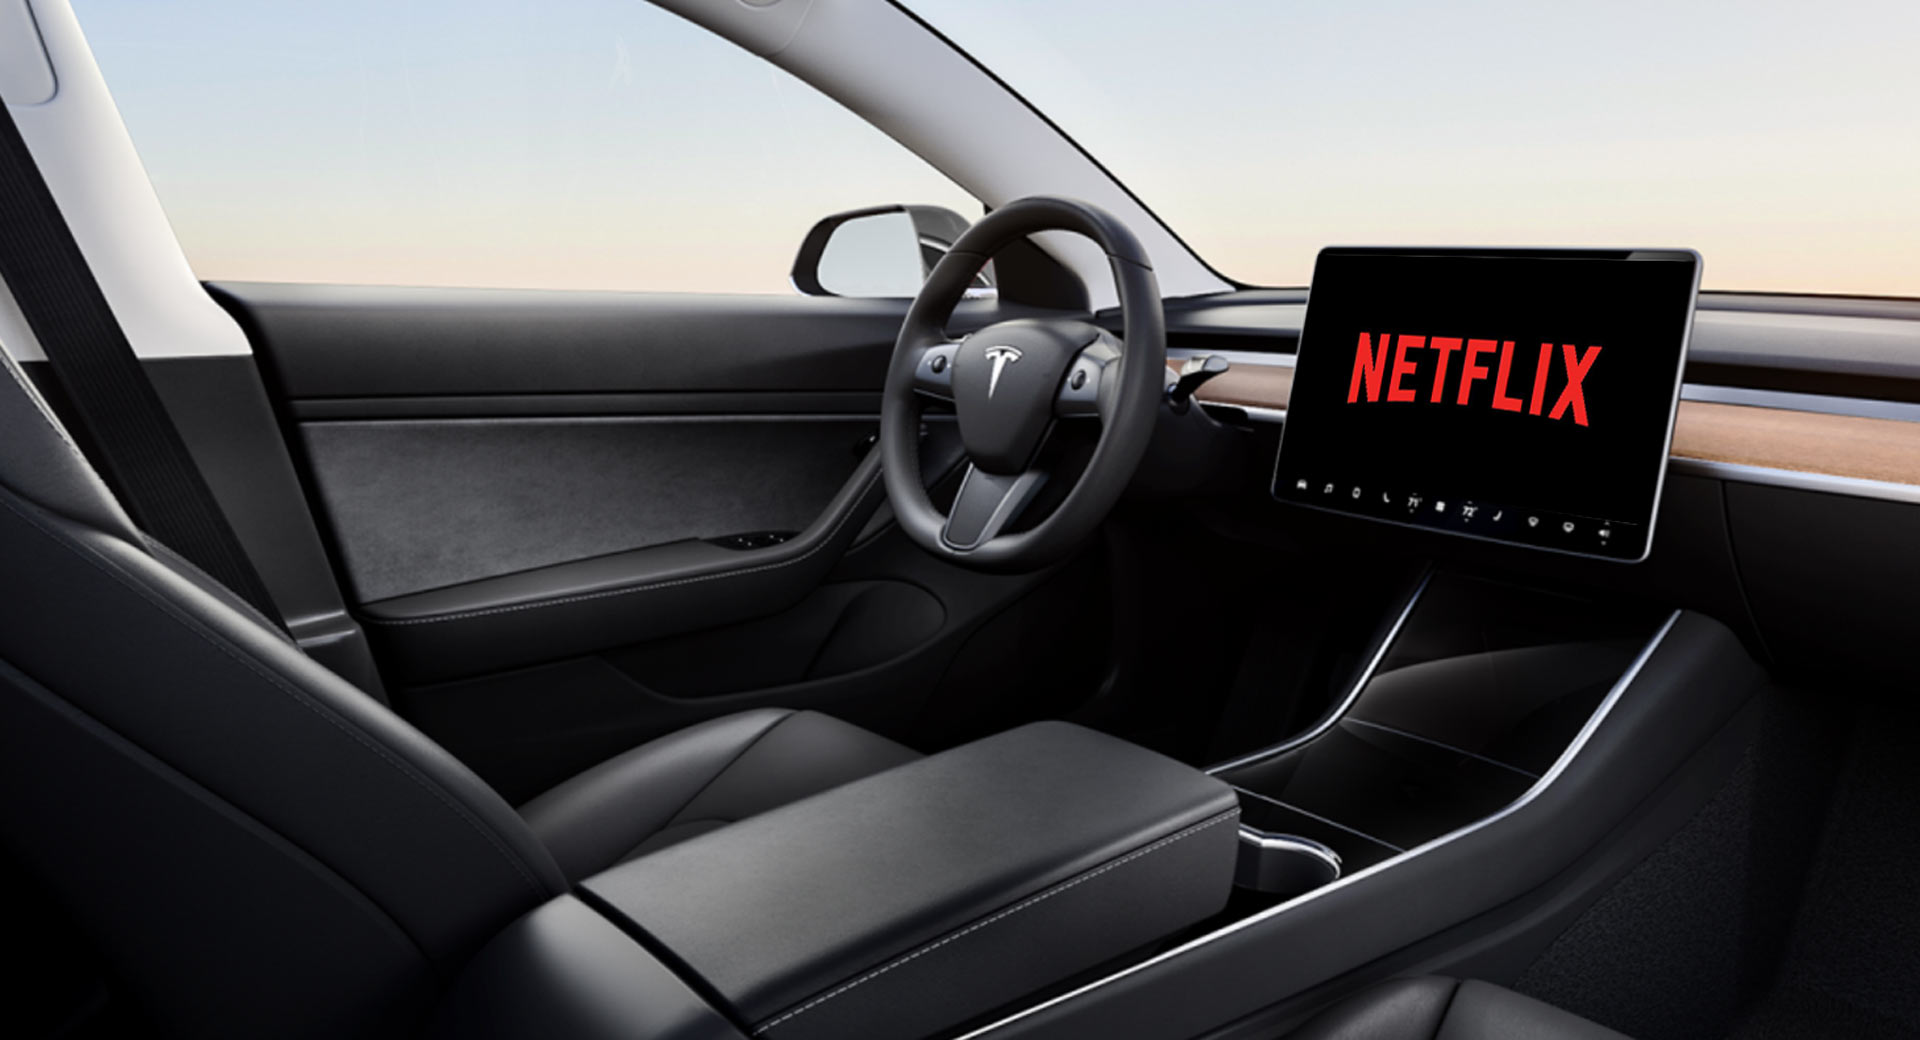 Netflix et Youtube pour Tesla ne pourront être consultés que lorsque la voiture sera à l'arrêt